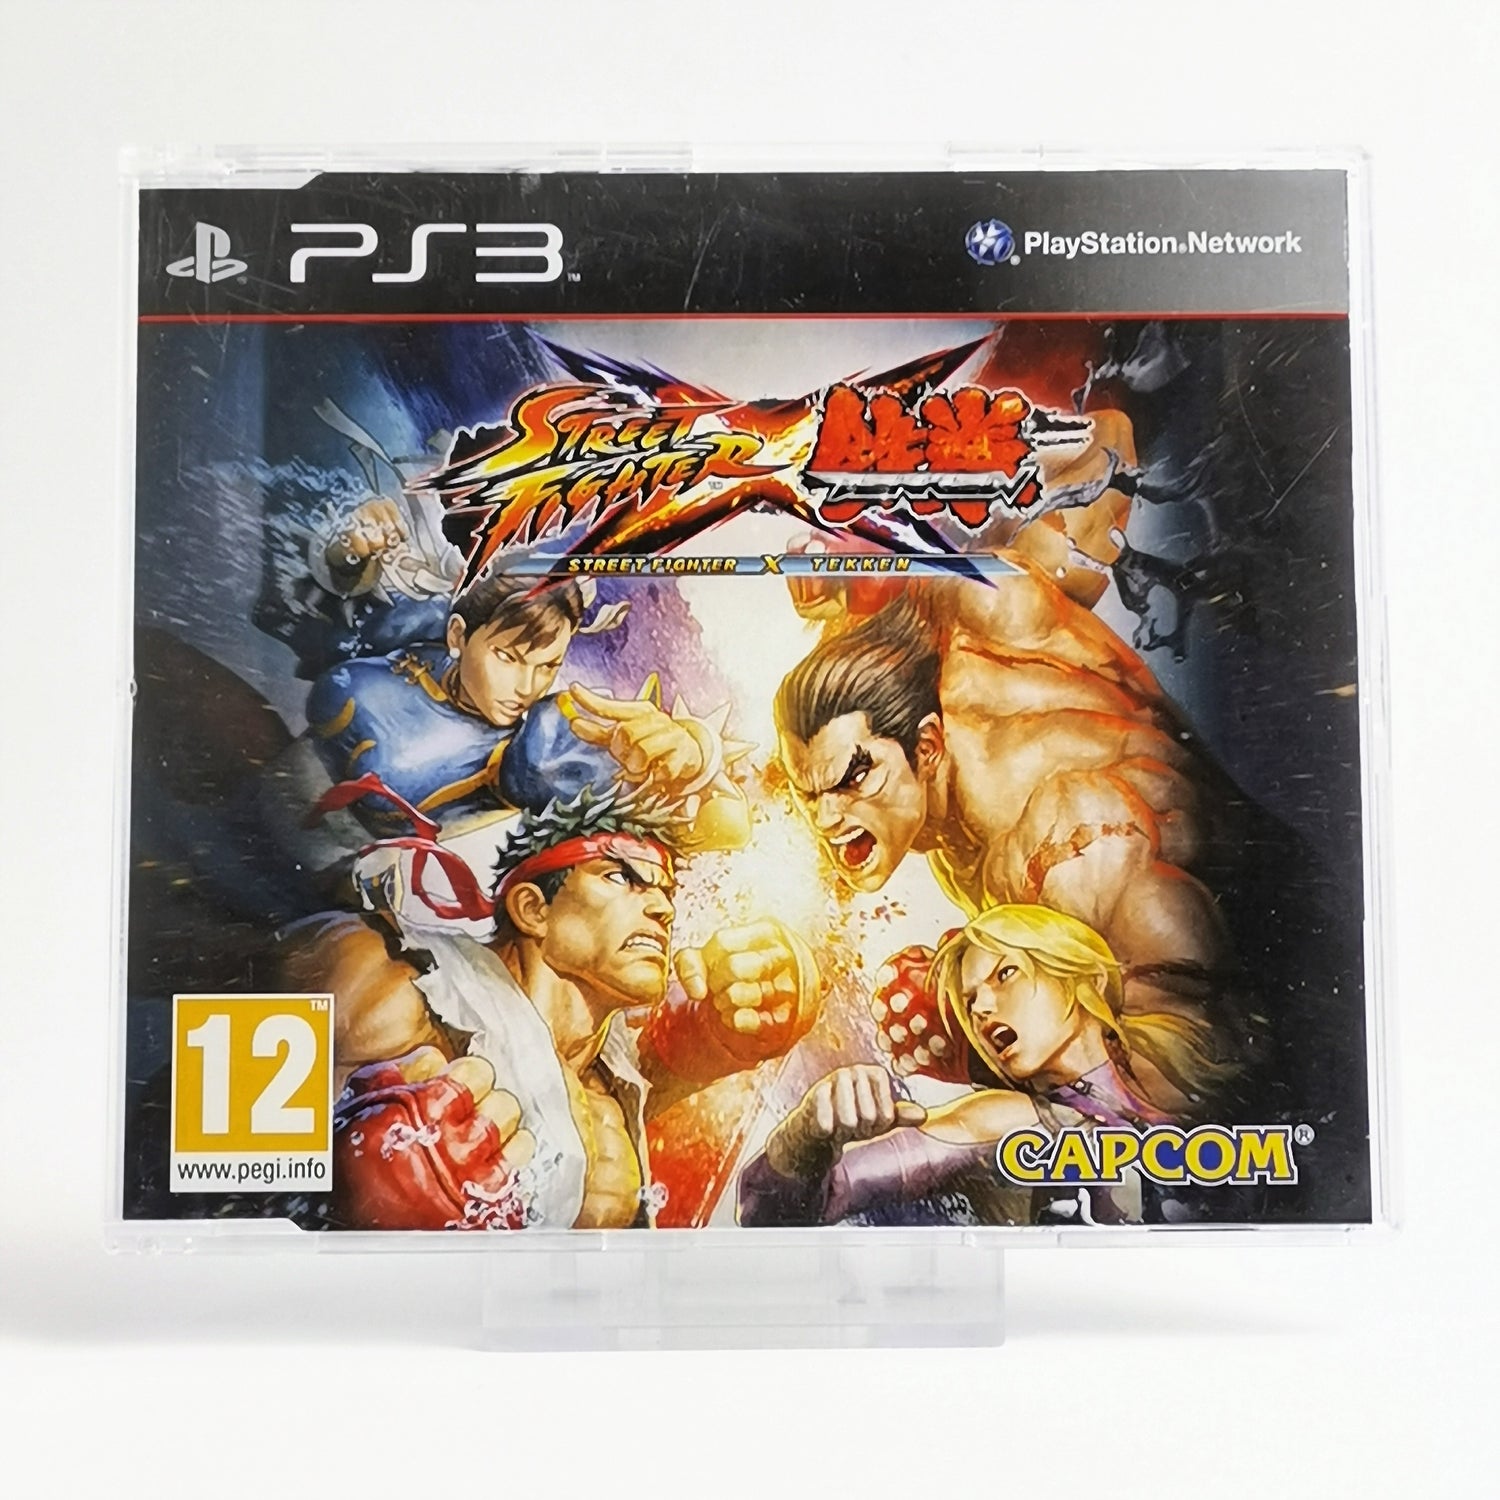 Sony Playstation 3 Promo: Street Fighter X Tekken - Full Version | PS3 original packaging